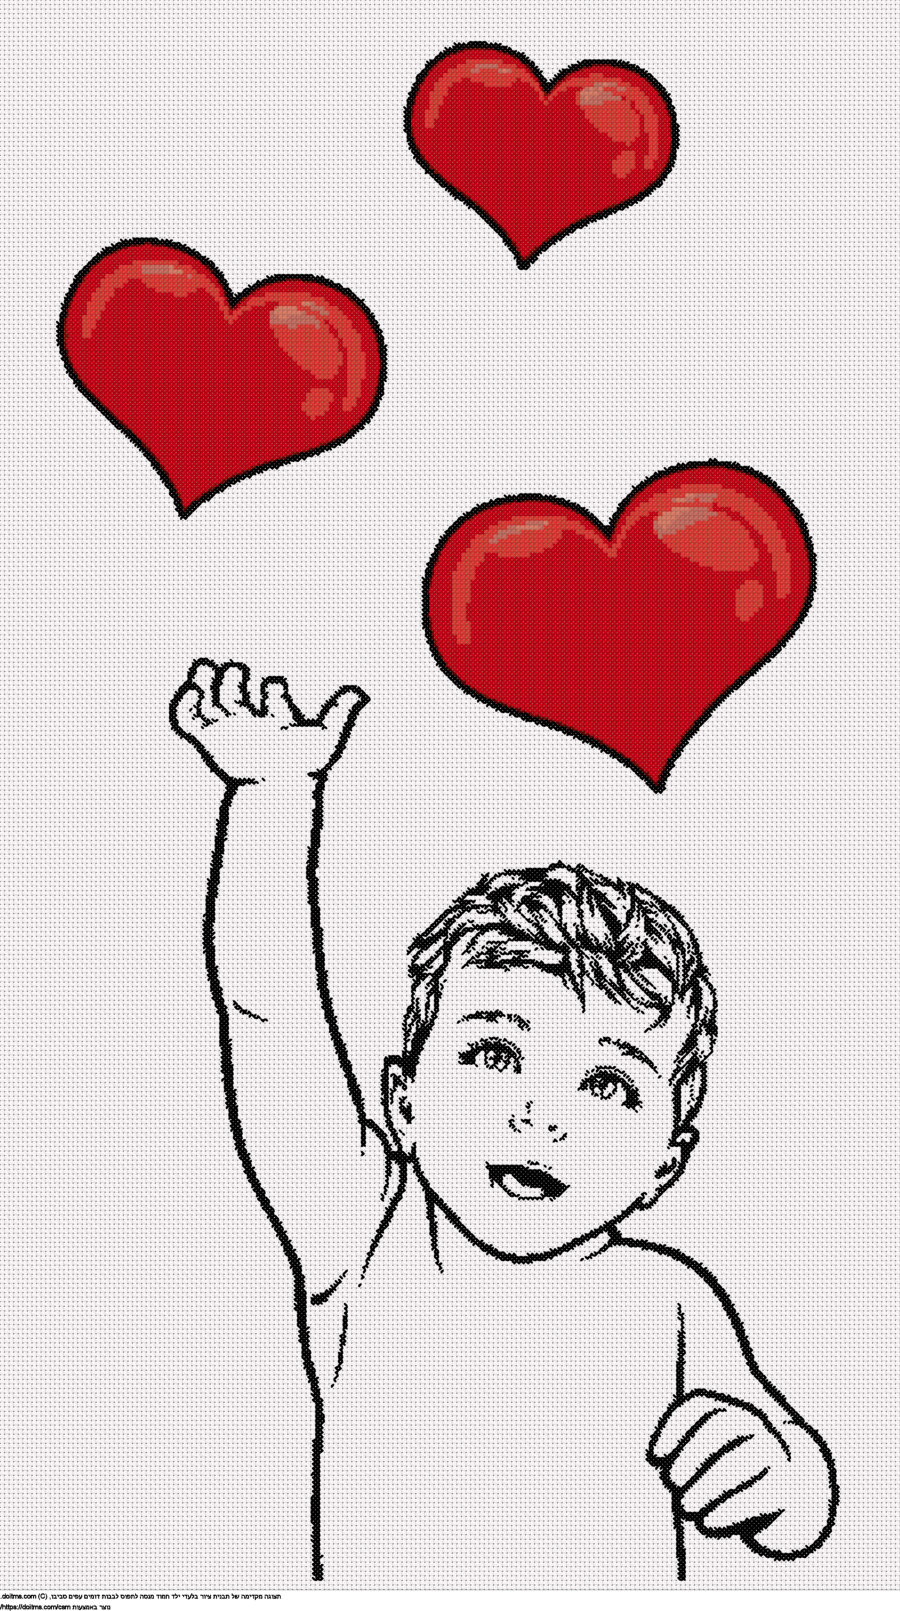 ילד שתופס לבבות מעופפים